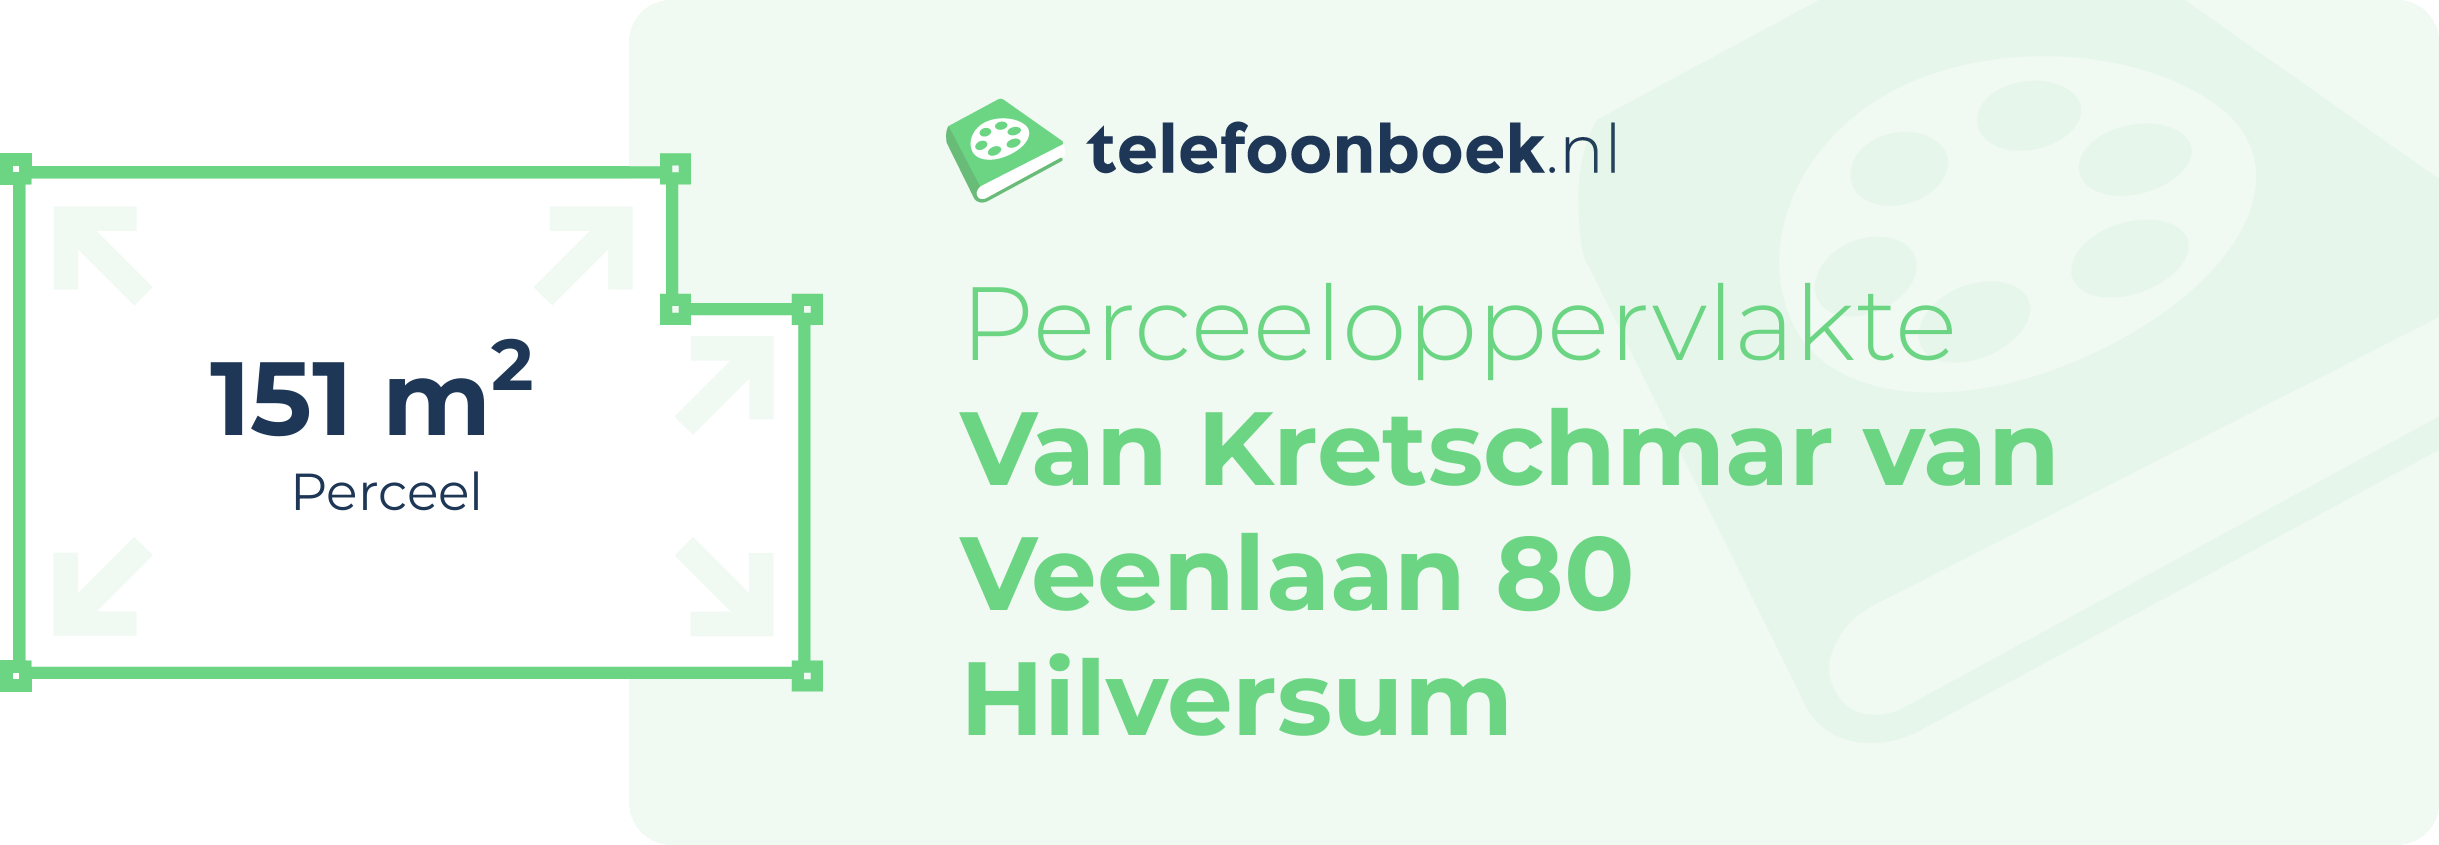 Perceeloppervlakte Van Kretschmar Van Veenlaan 80 Hilversum